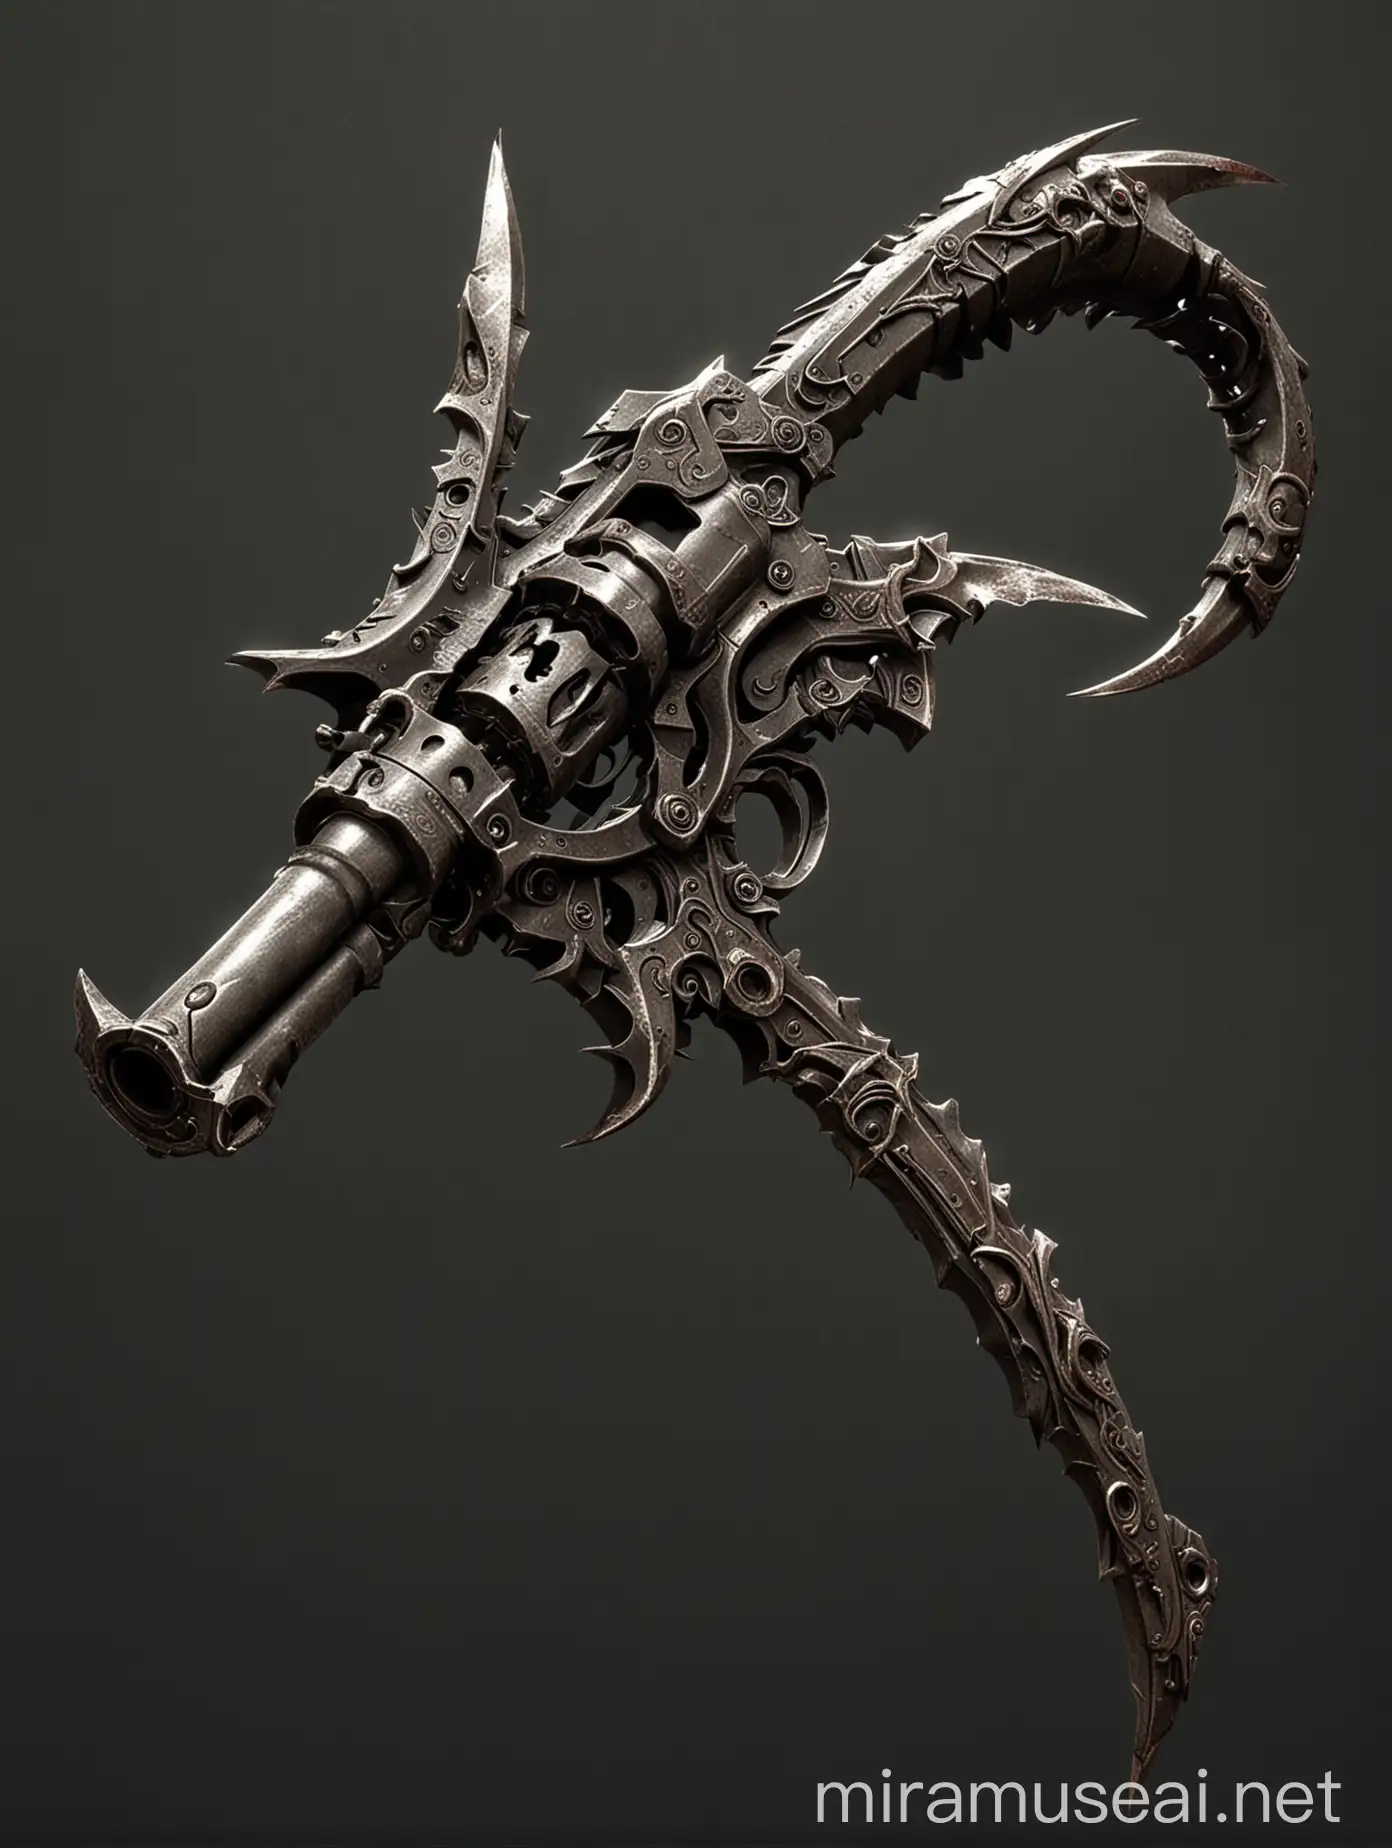 Demonic Sickle with Attached Revolver Gun